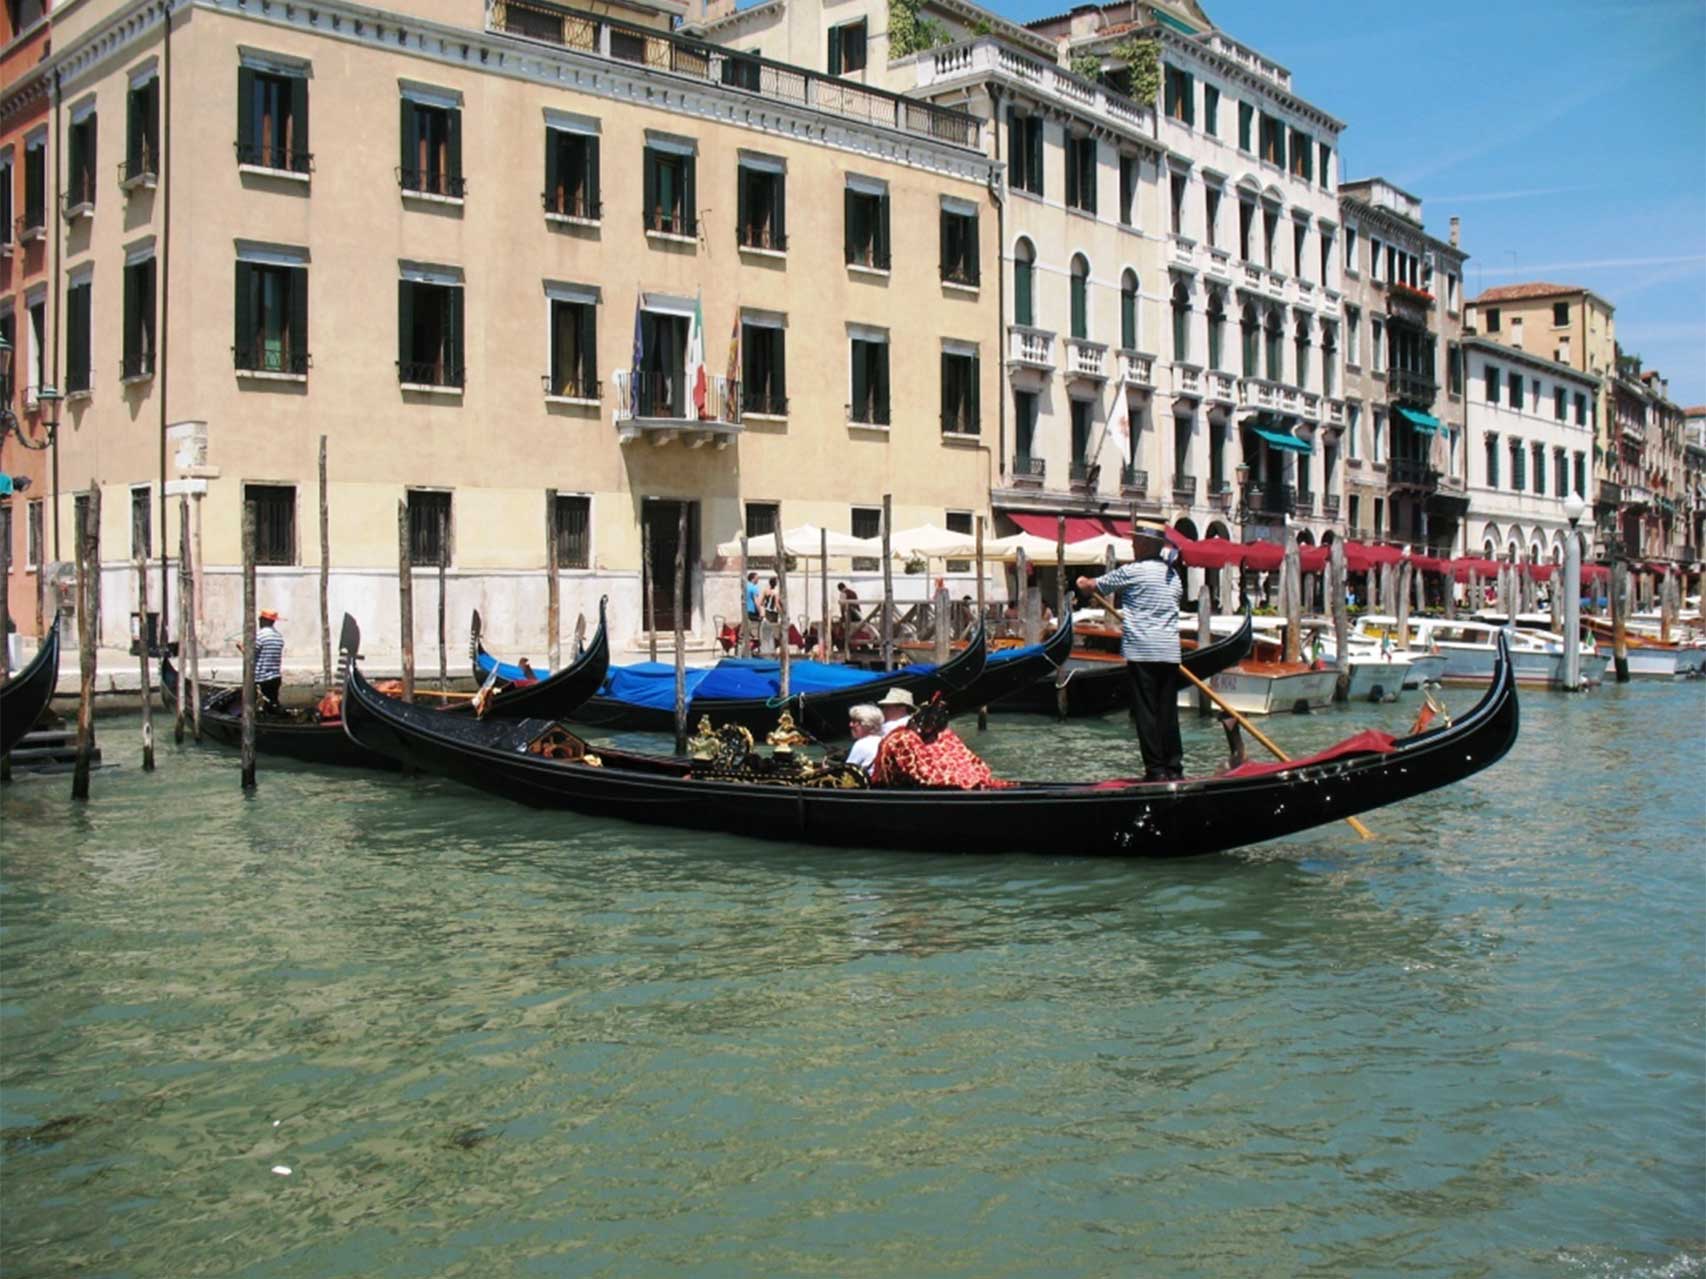 Tourist boats in Venice